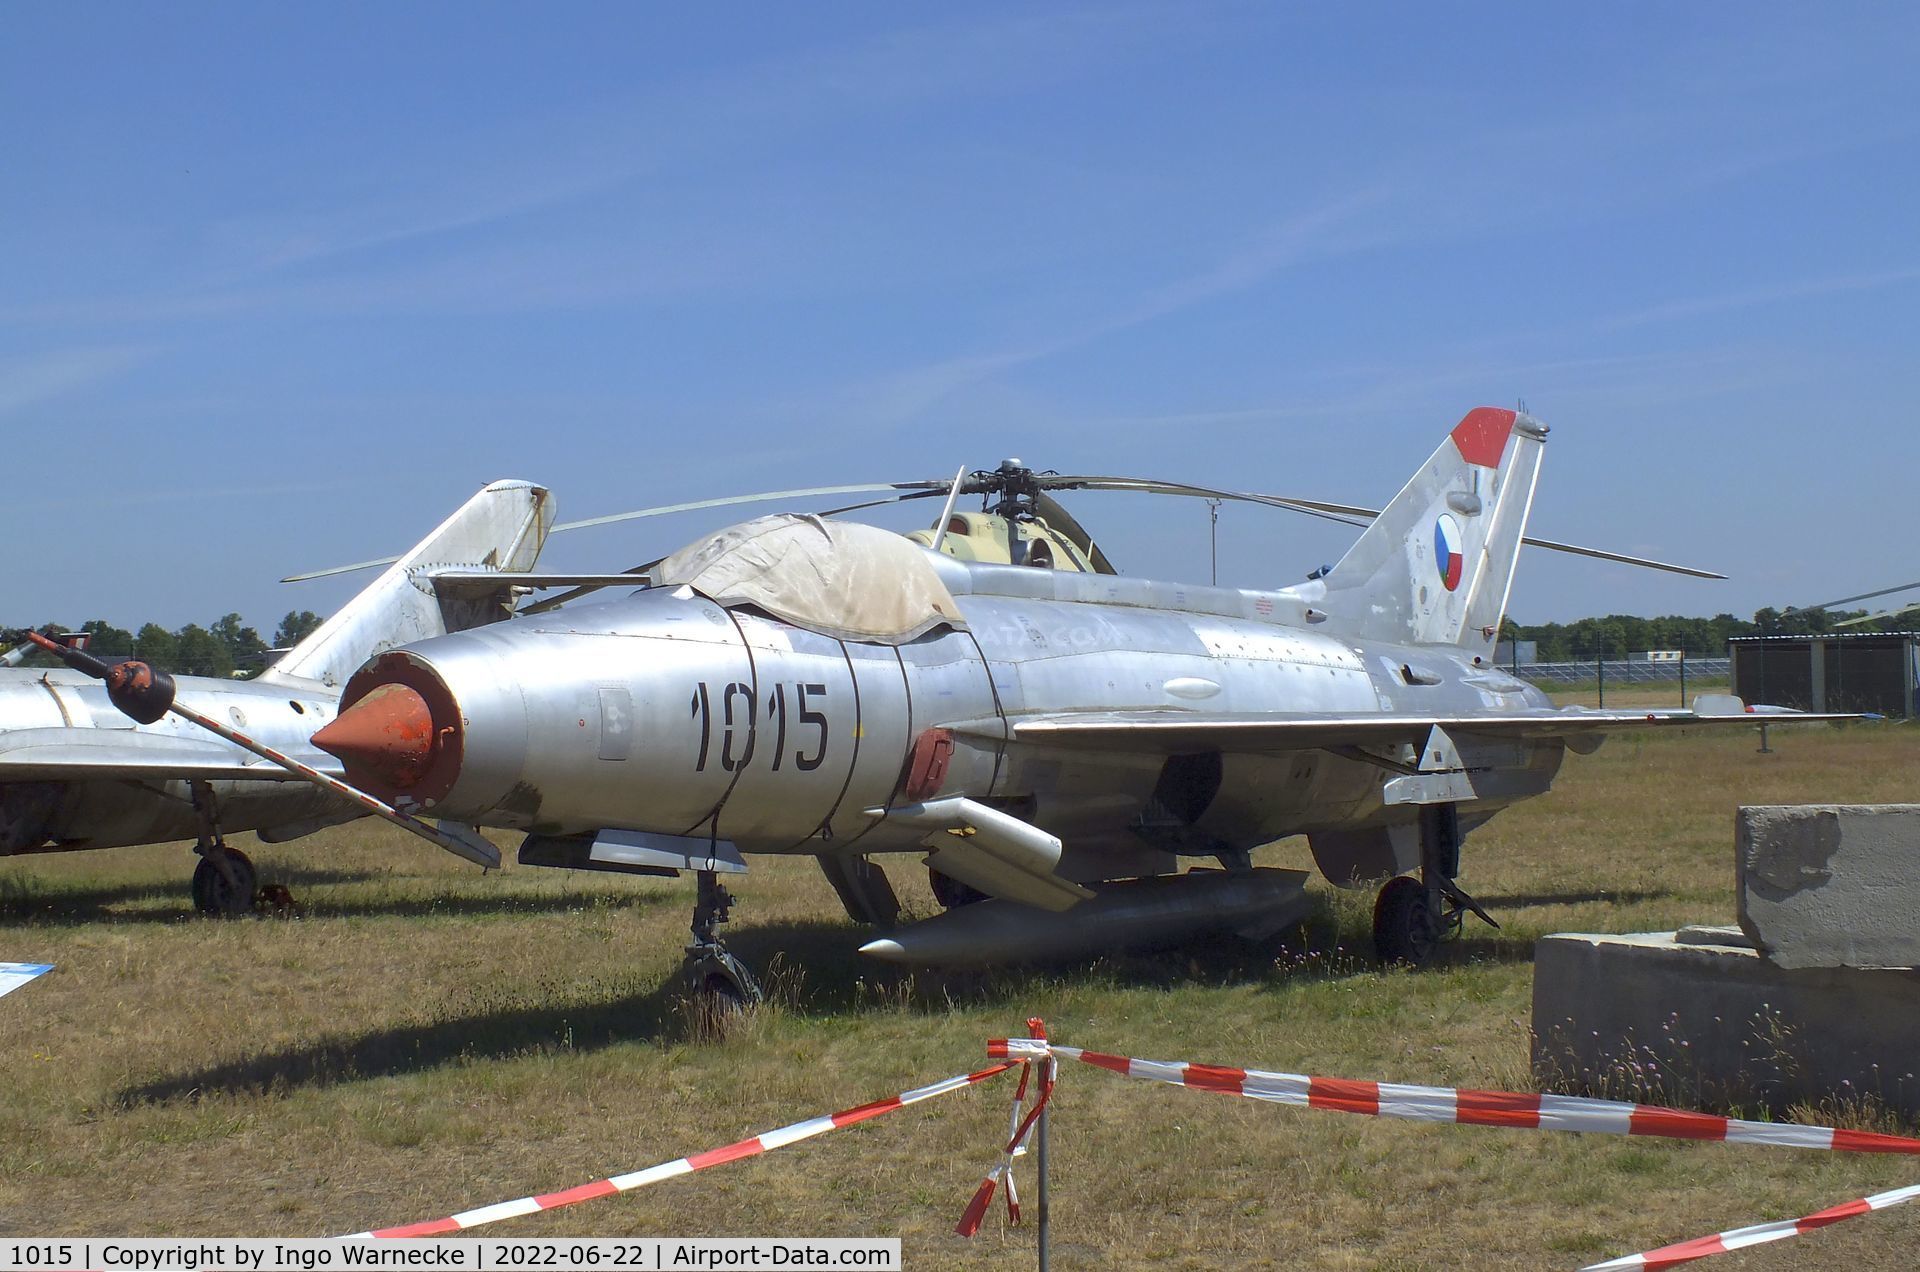 1015, 1971 Aero S-106 (MiG-21F-17) C/N 061015, Aero S-106 (MiG-21F-13) FISHBED-C at the Flugplatzmuseum Cottbus (Cottbus airfield museum)